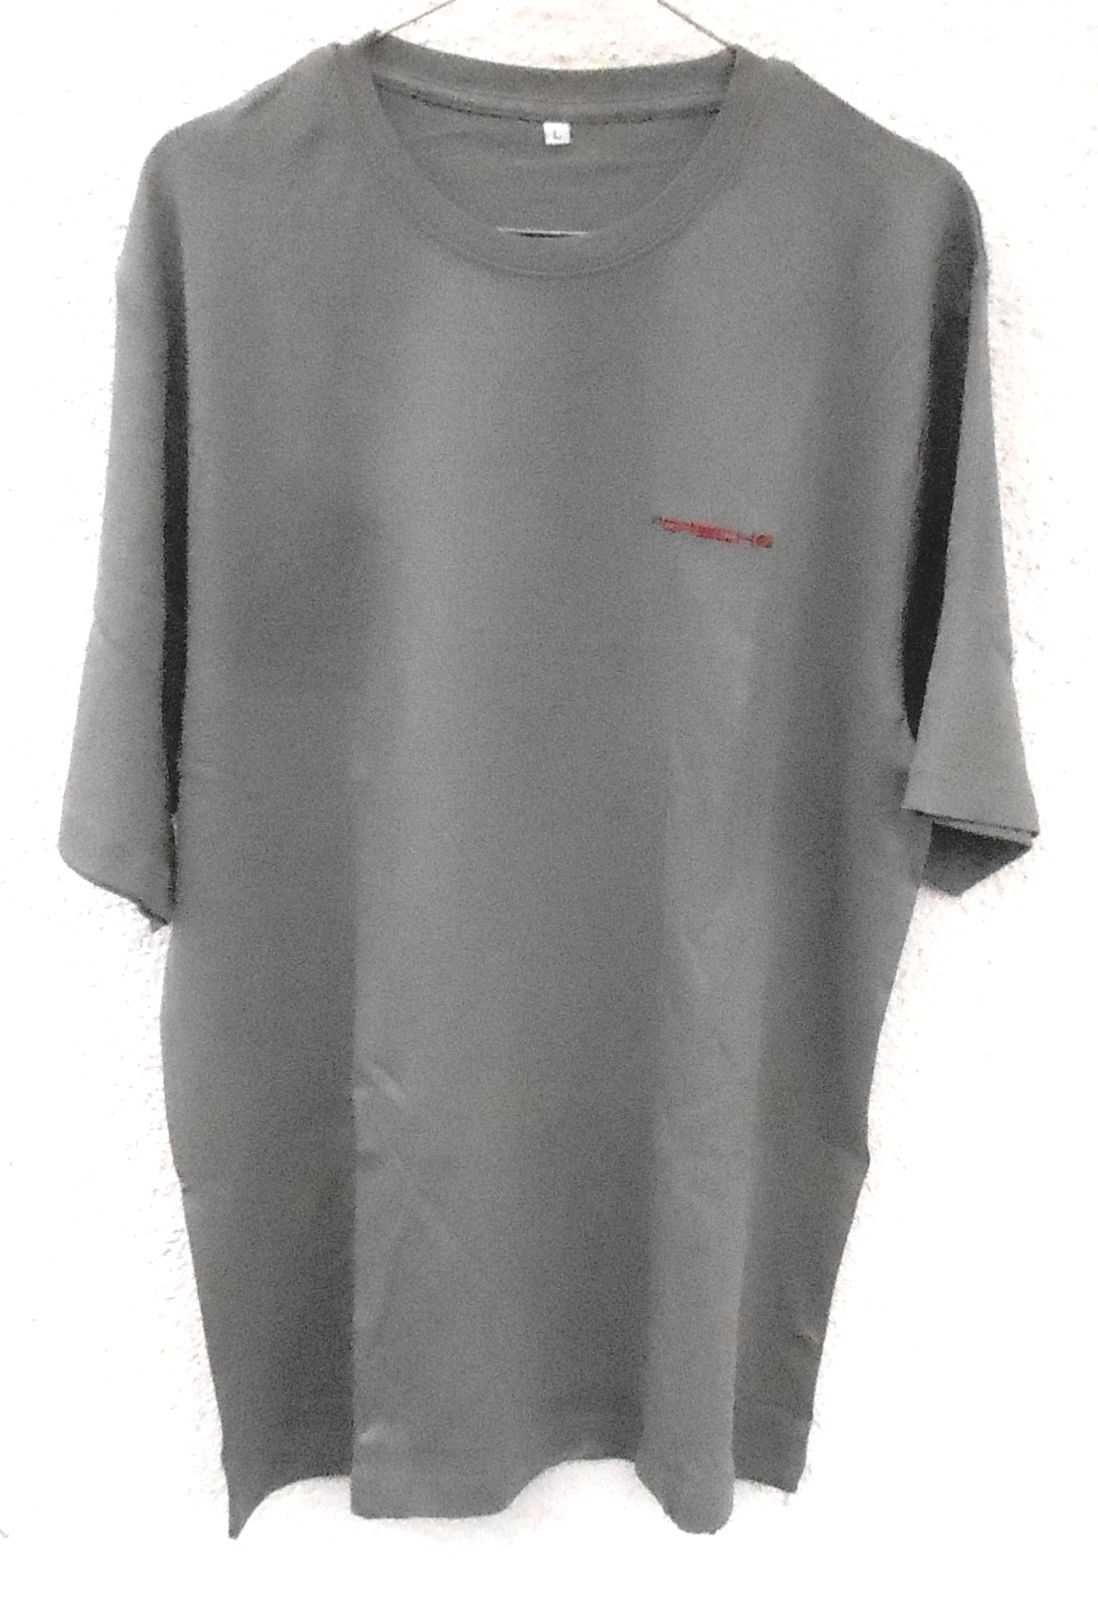 Porche - koszulka polo rozmiar L, siwa/szara, krótki rękaw